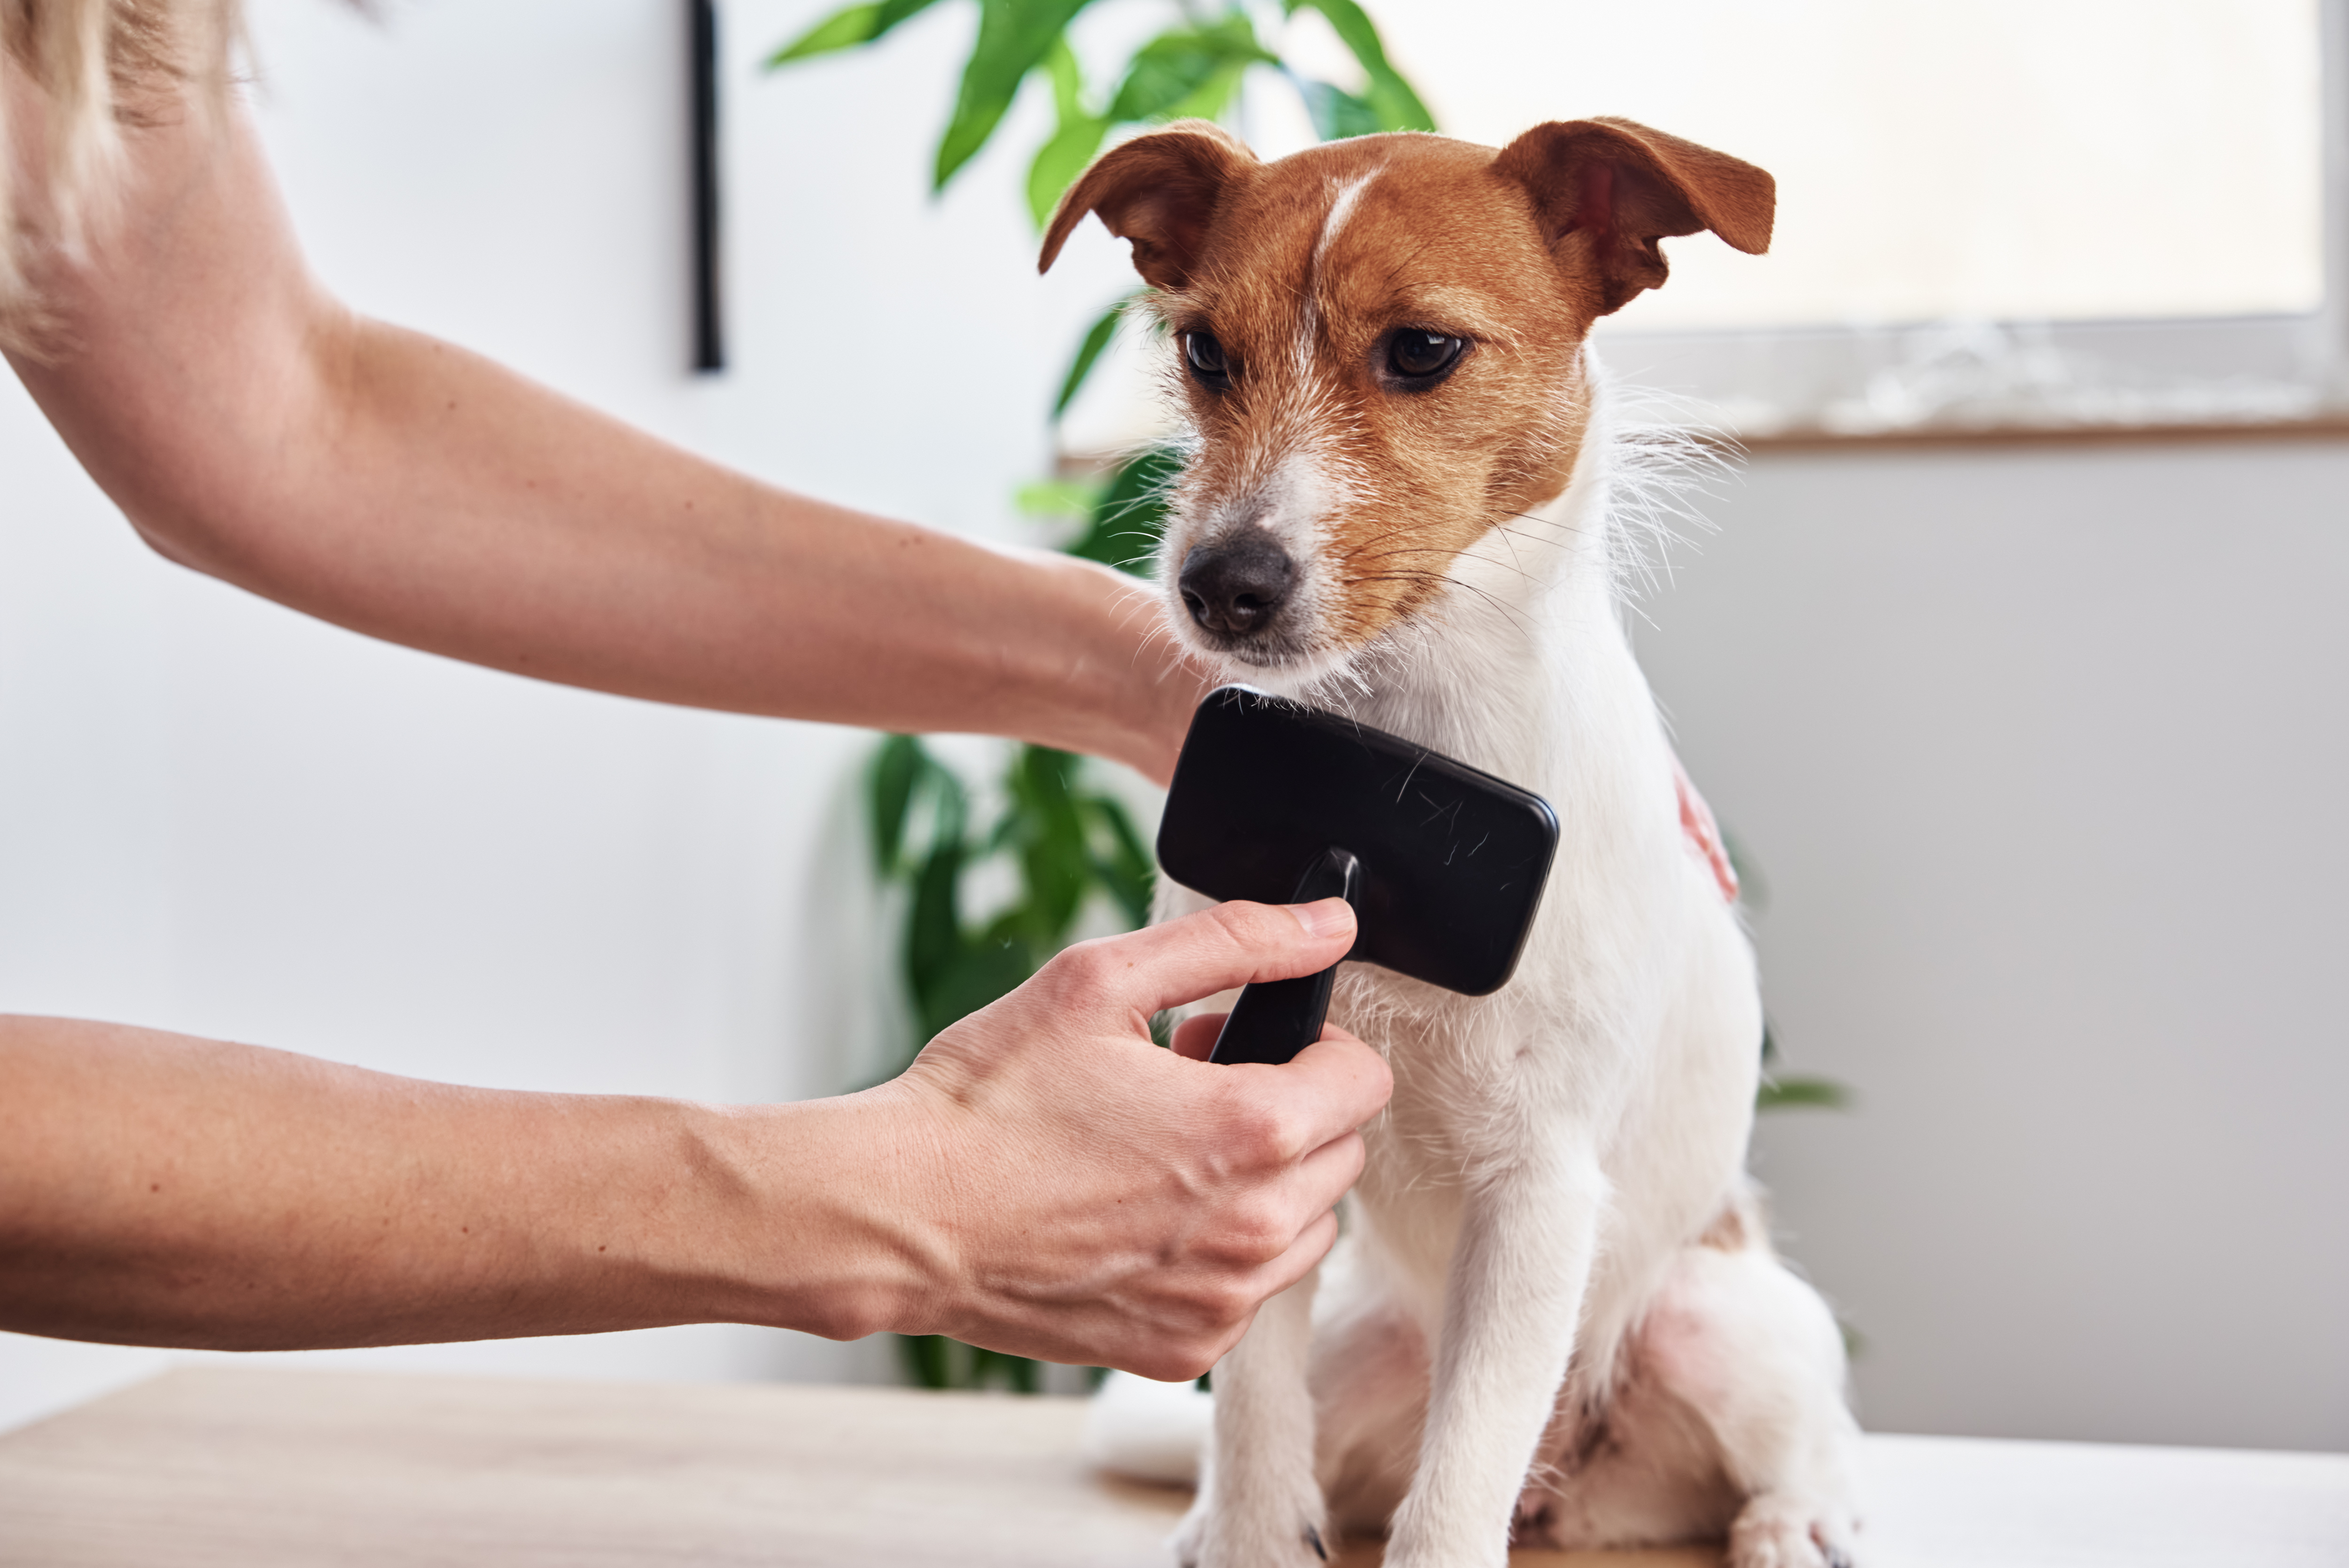 Hundefriseursalons können teuer sein, mit durchschnittlichen Kosten von 43 £ pro Sitzung, aber Sie können lernen, Ihren Hund zu Hause zu pflegen